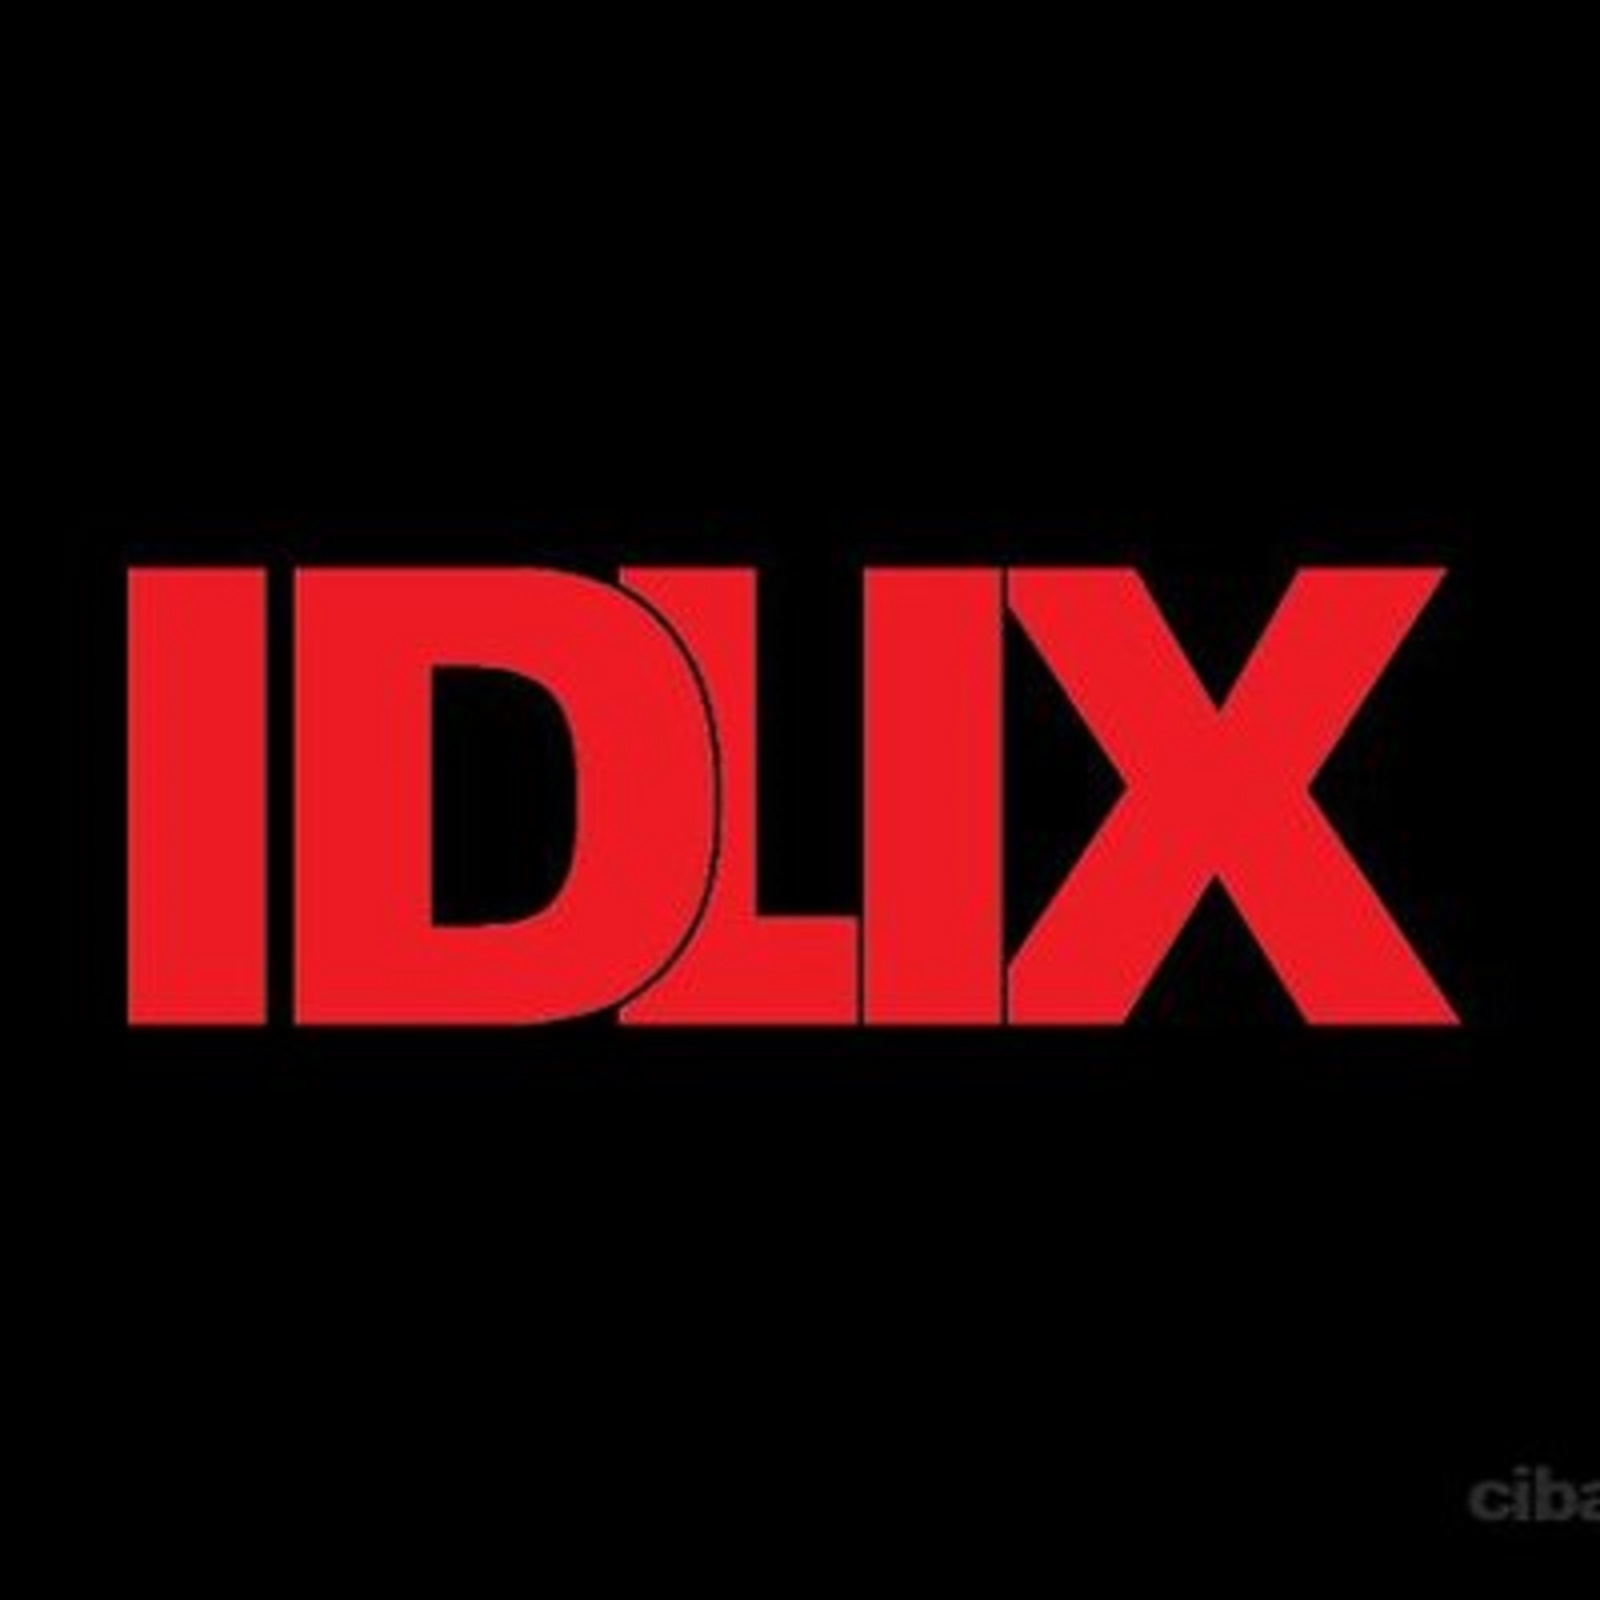 Nonton Drakor Gratis di IDLIX, Kualitas Film HD dan Sub Indo